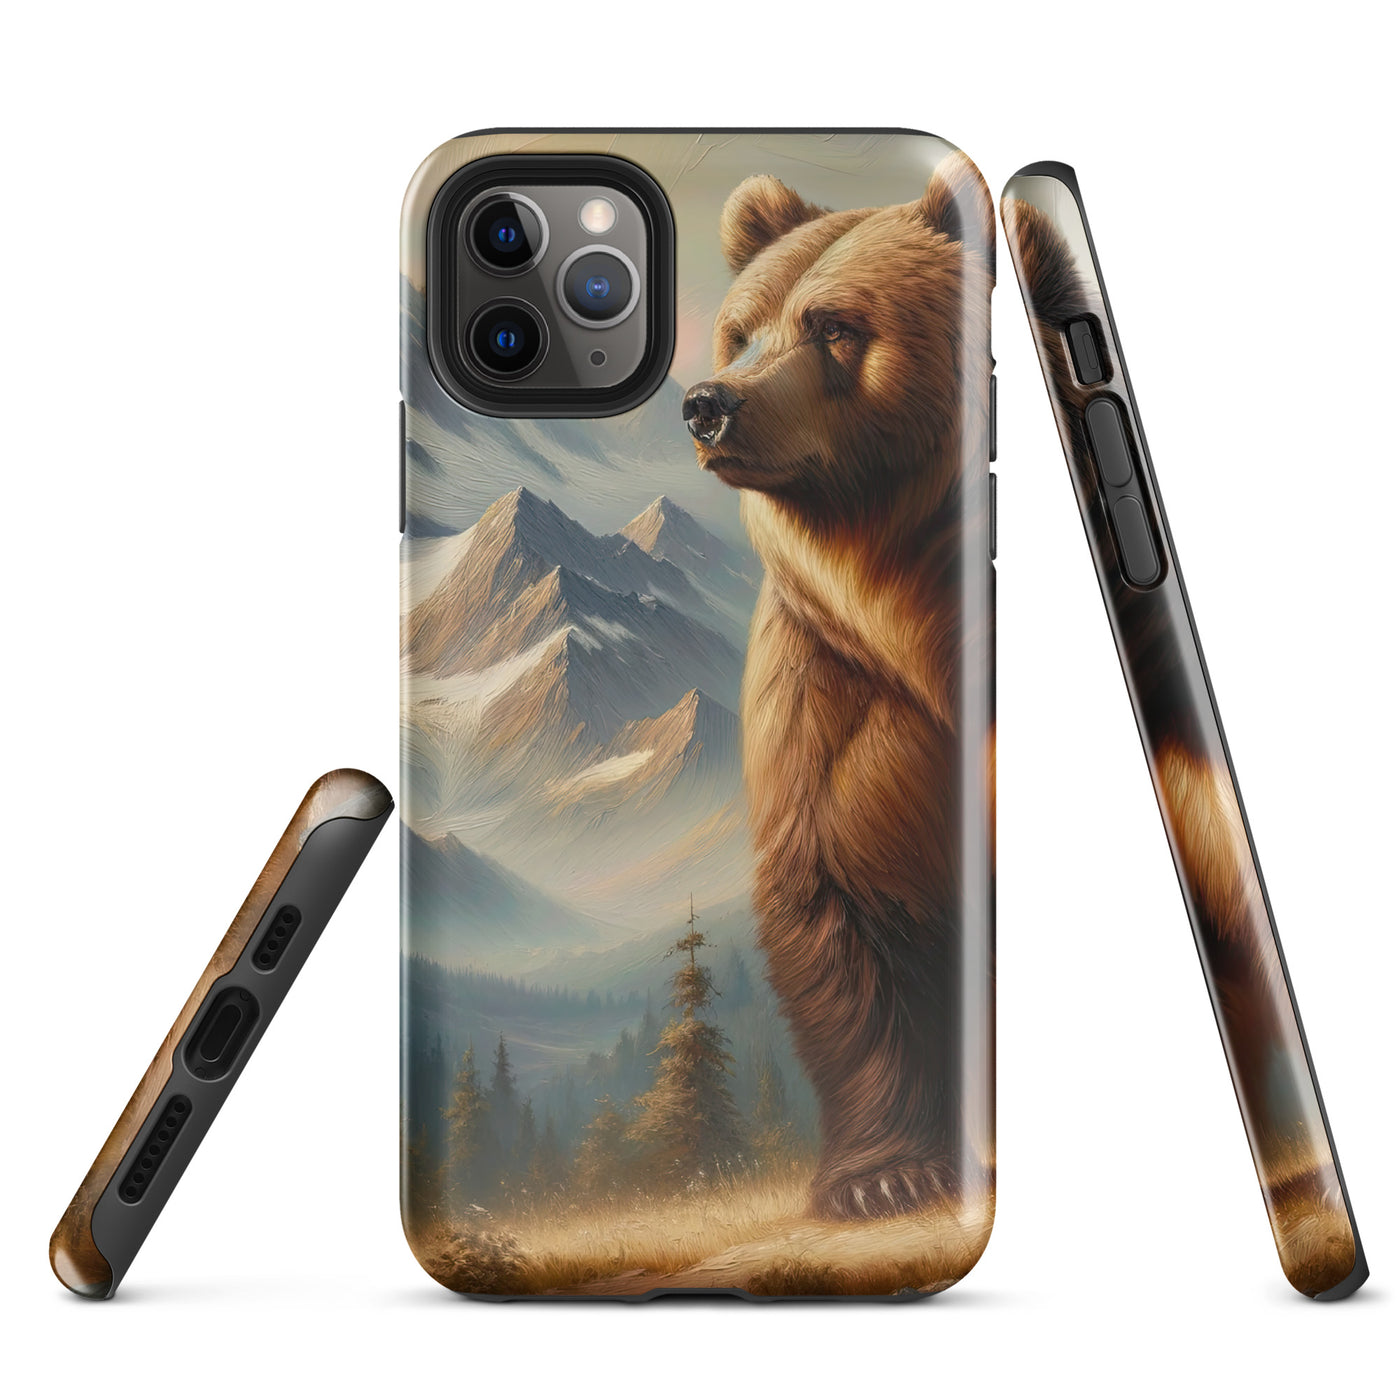 Ölgemälde eines königlichen Bären vor der majestätischen Alpenkulisse - iPhone Schutzhülle (robust) camping xxx yyy zzz iPhone 11 Pro Max